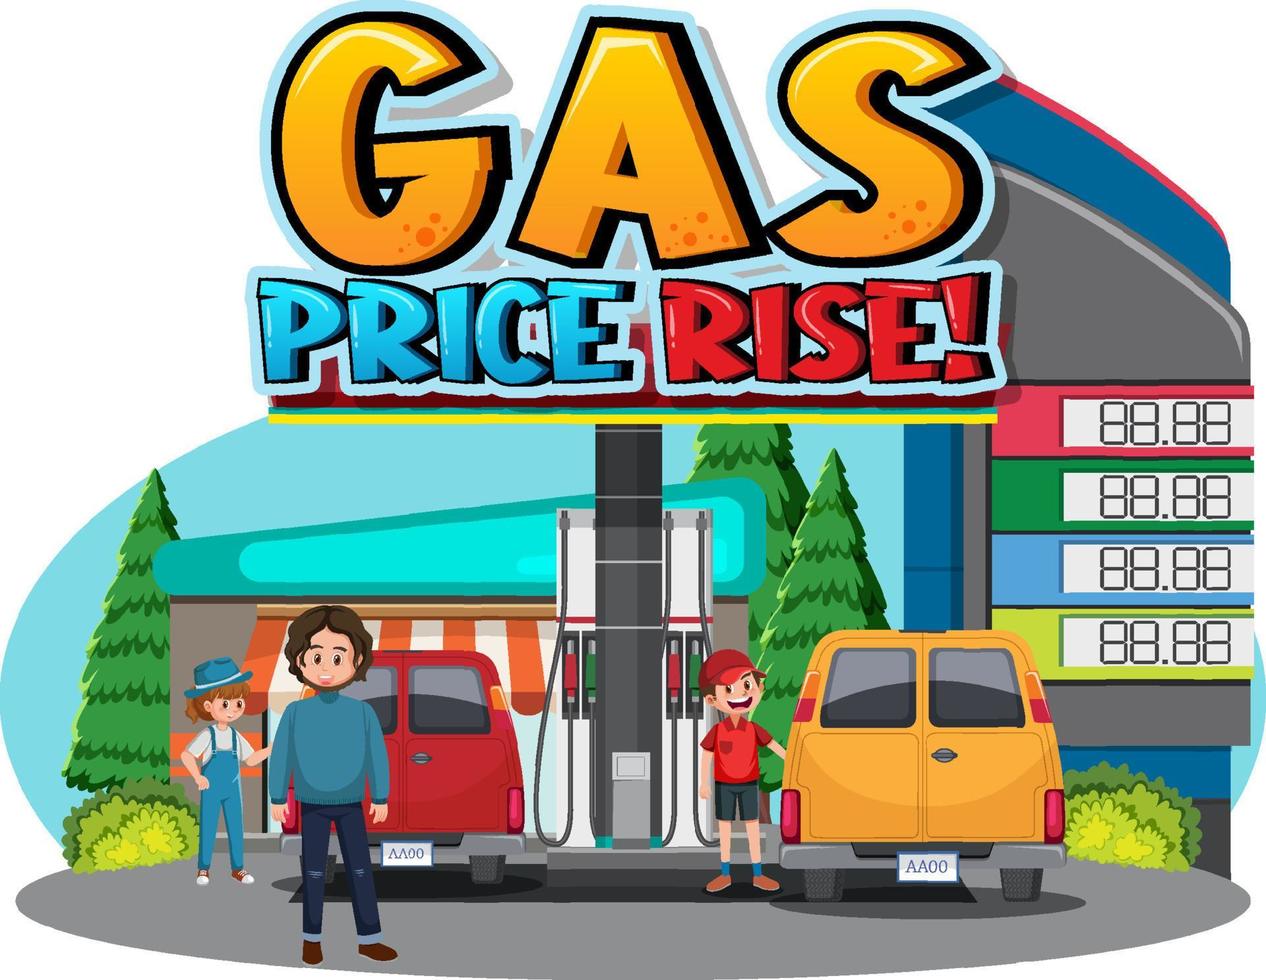 bensinstation med gasprisstegring ord logotyp vektor